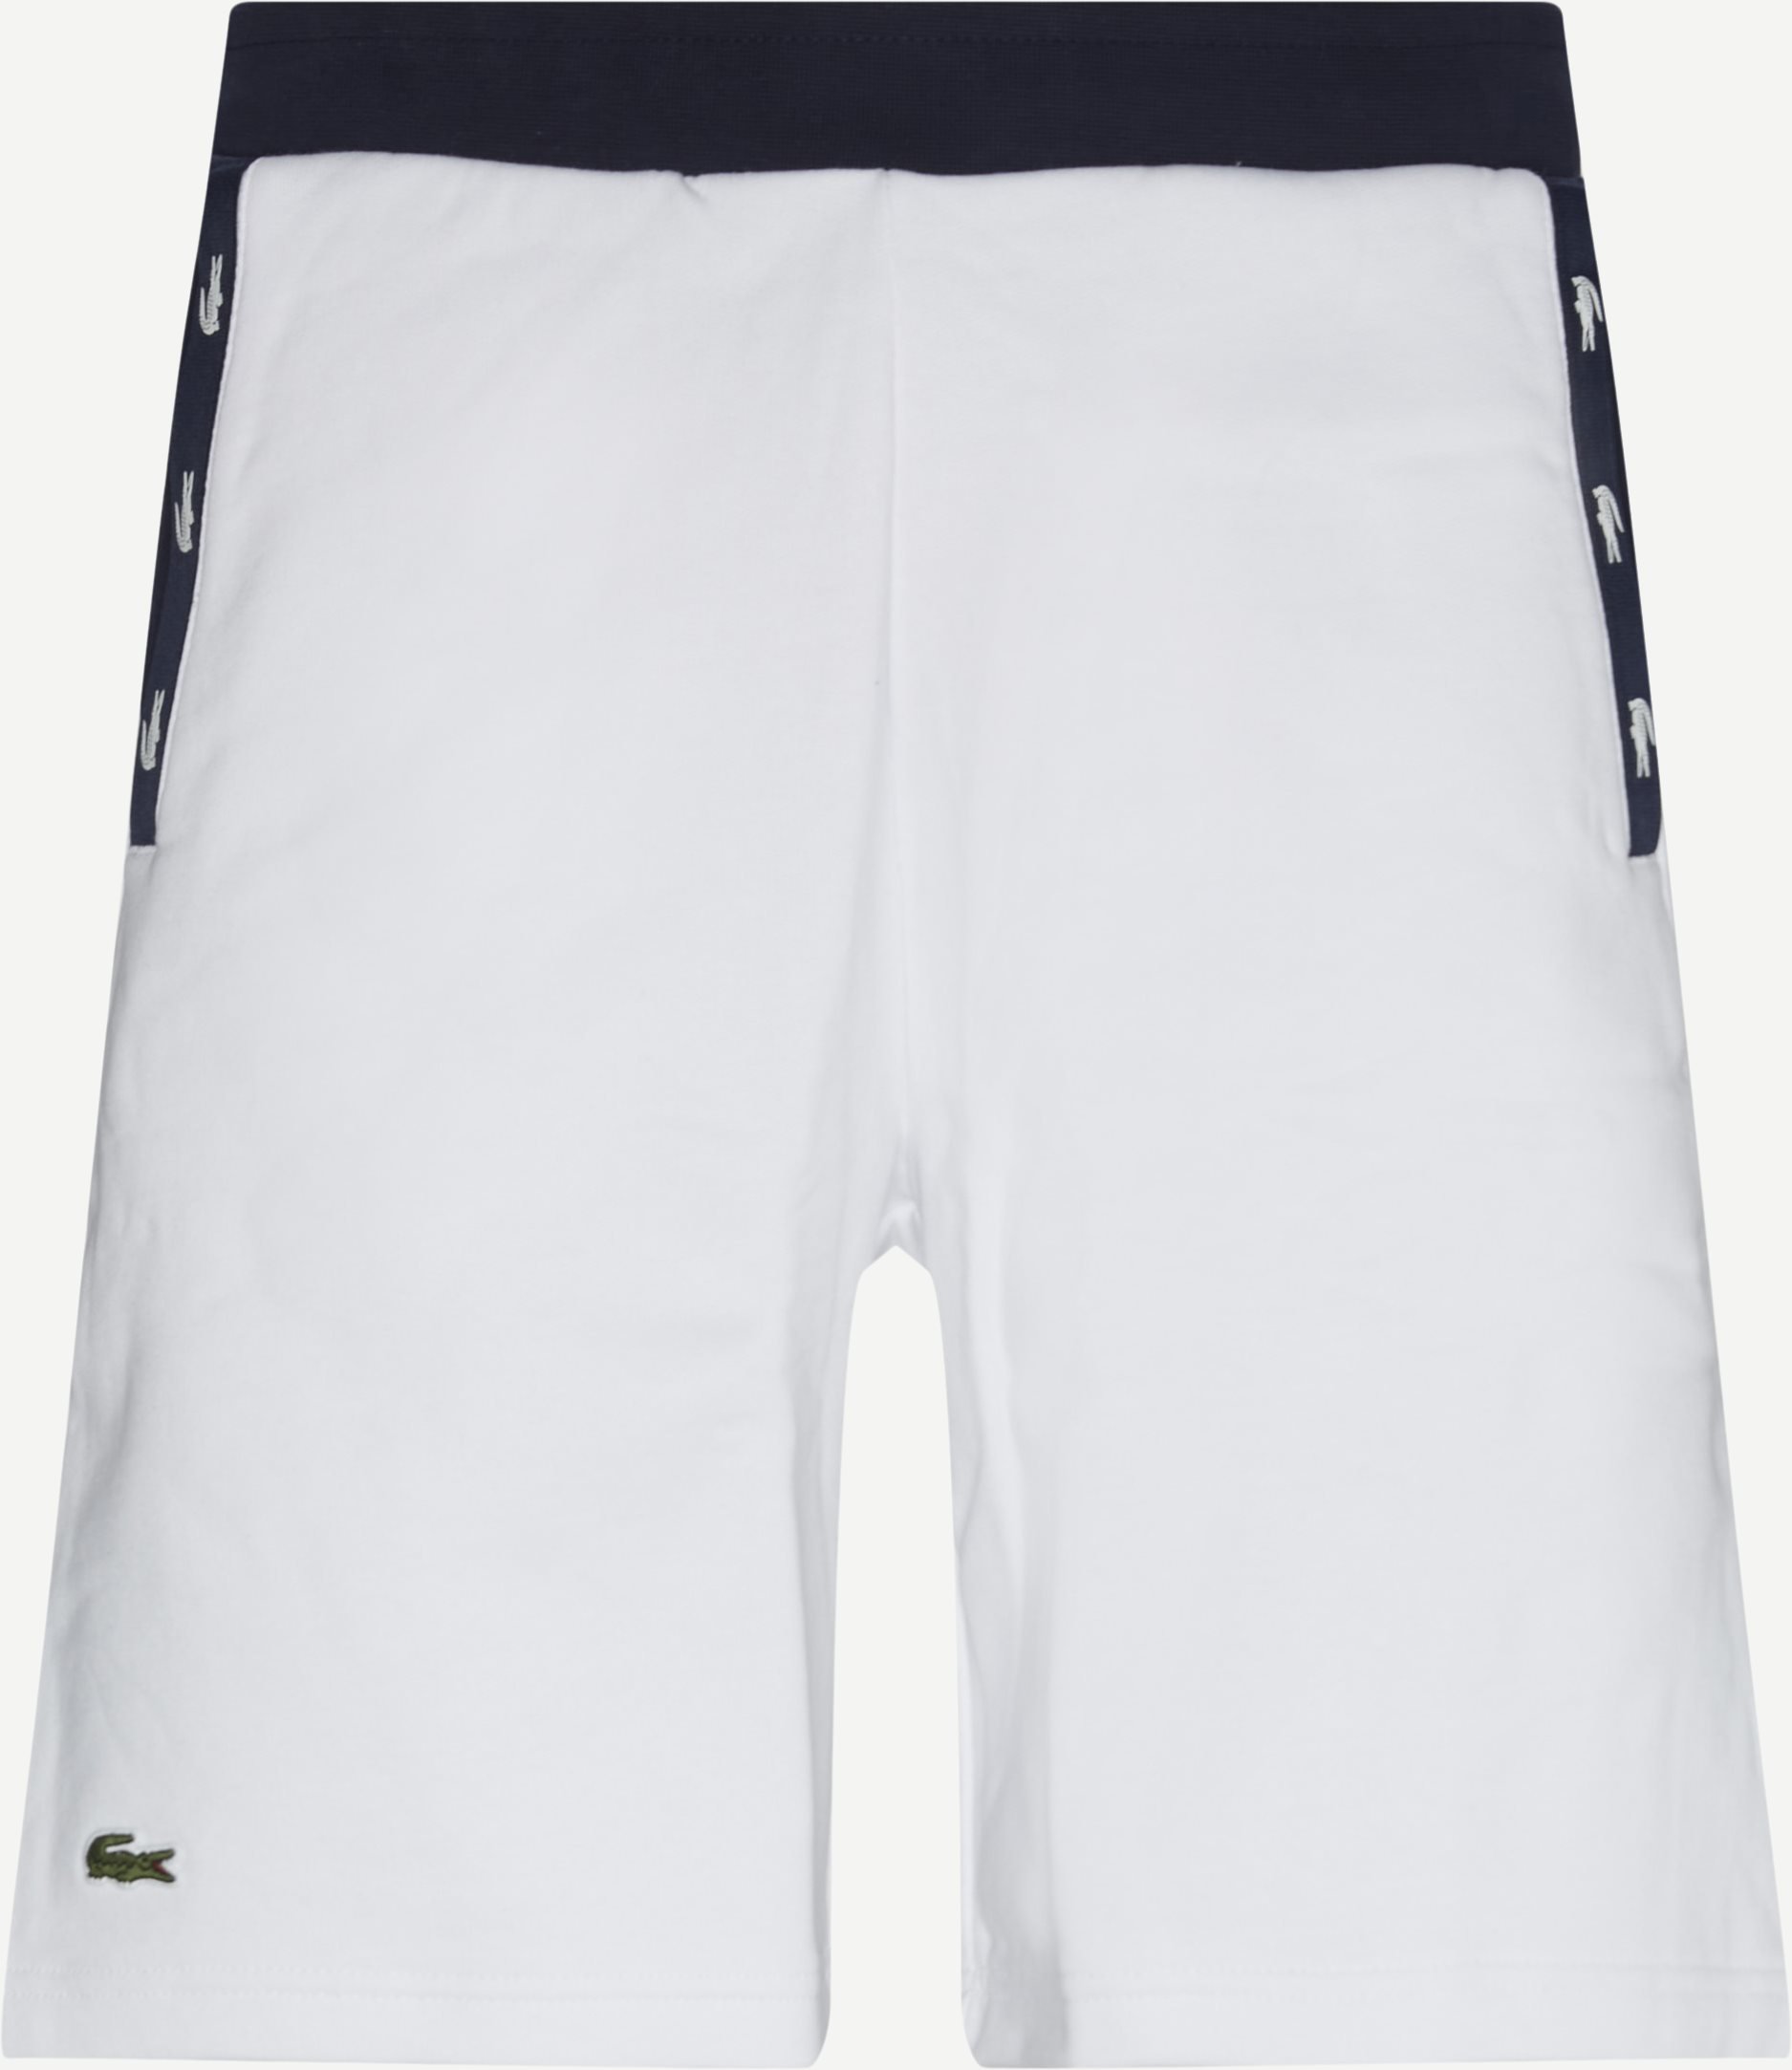 Baumwollshorts - Shorts - Regular fit - Weiß